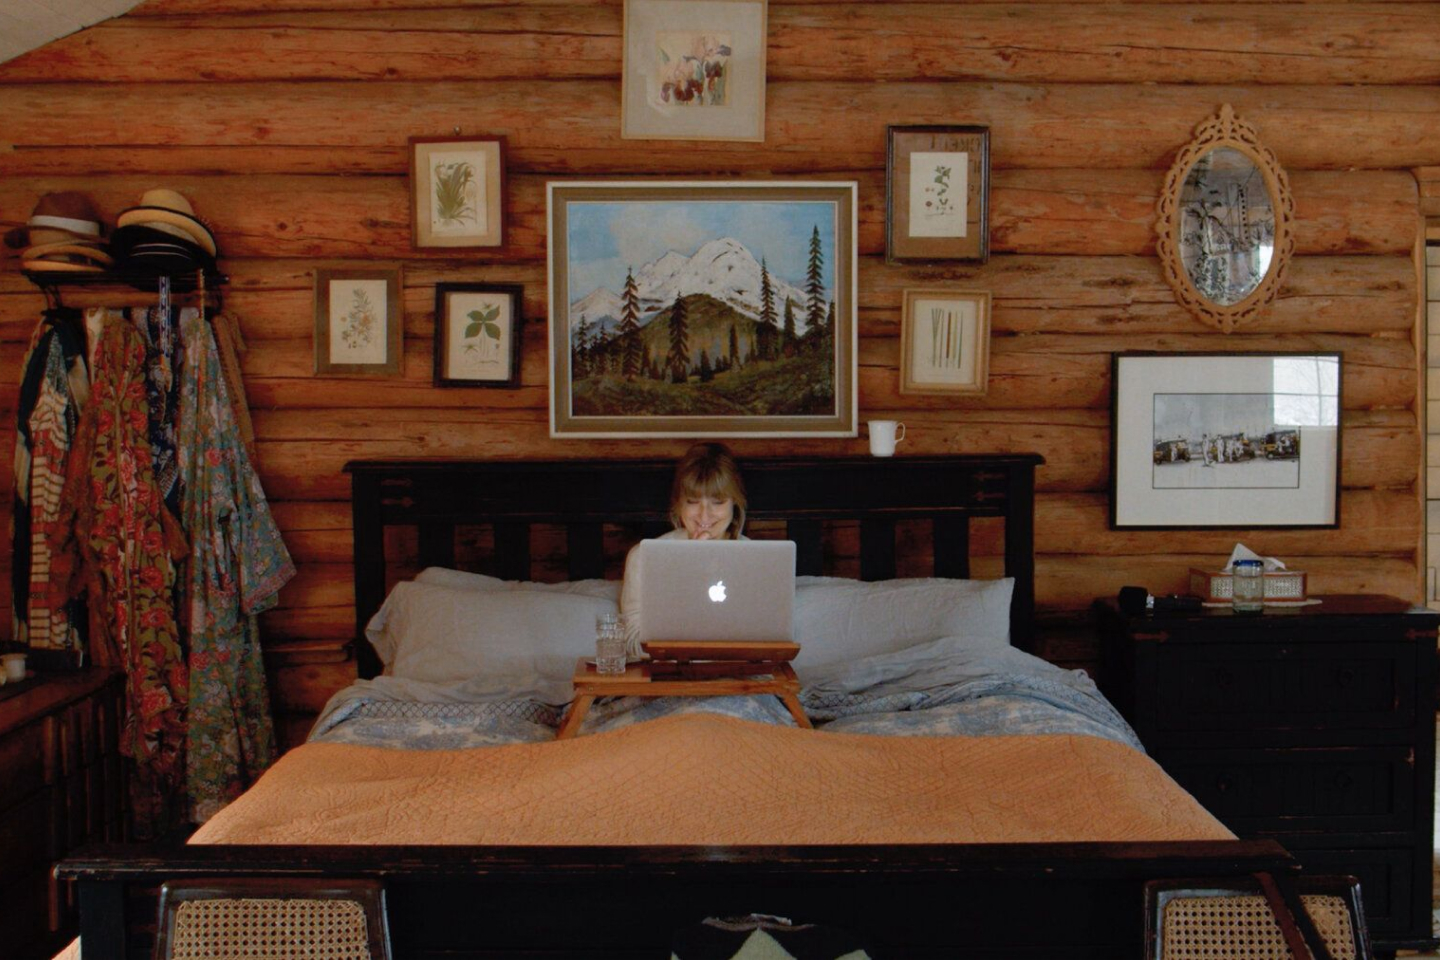 บุคคลหนึ่งทำงานแบบออฟไลน์ใน MacBook ขณะอยู่บนเตียง